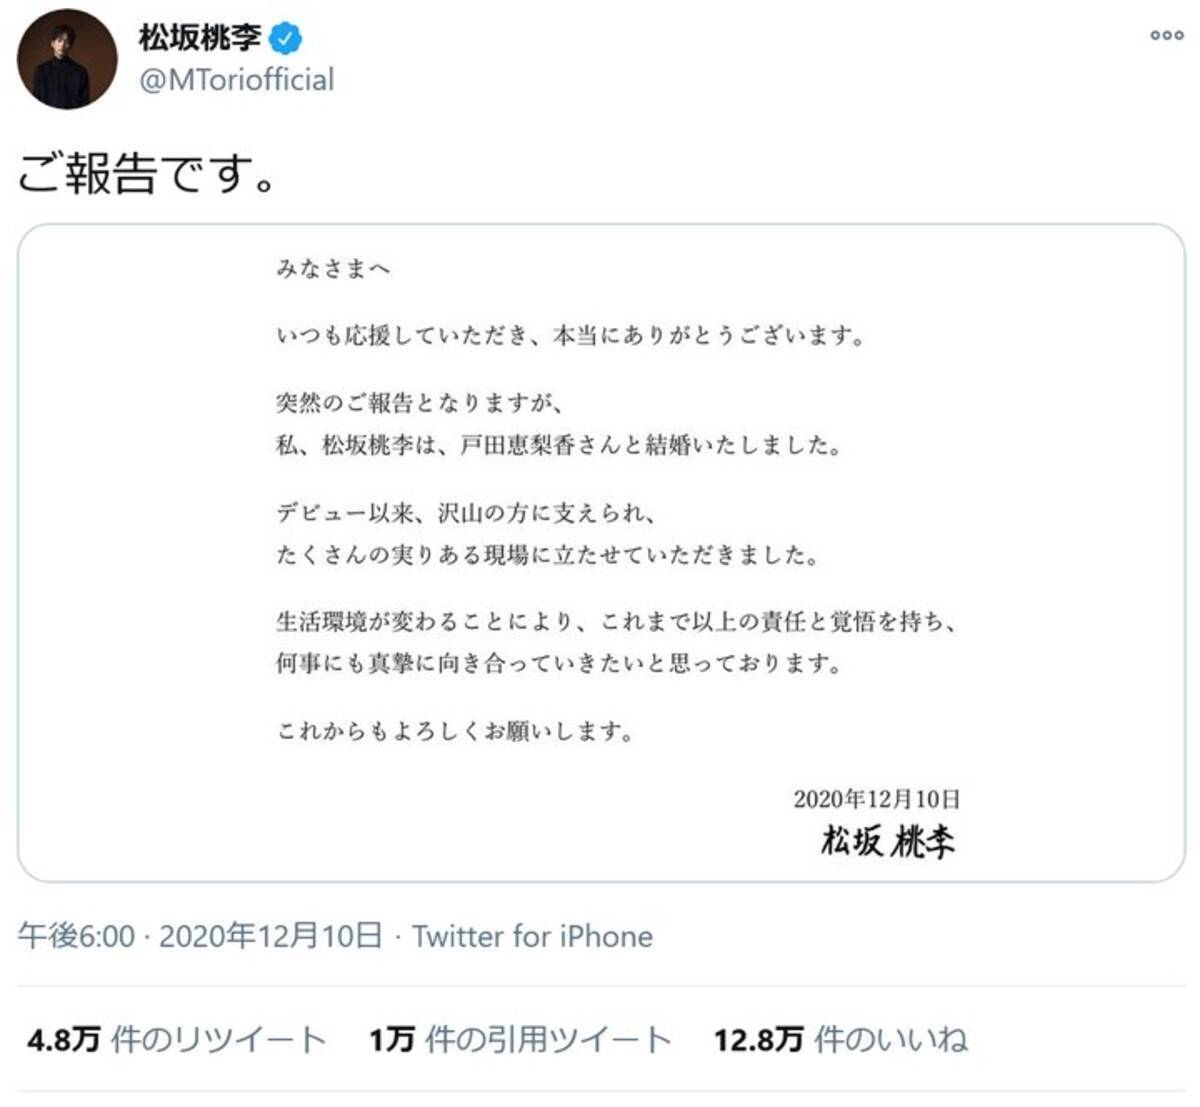 松坂桃李さん 突然のご報告となりますが 戸田恵梨香さんとの結婚を発表 遊戯王 に関連した祝福ツイートも相次ぐ 年12月10日 エキサイトニュース